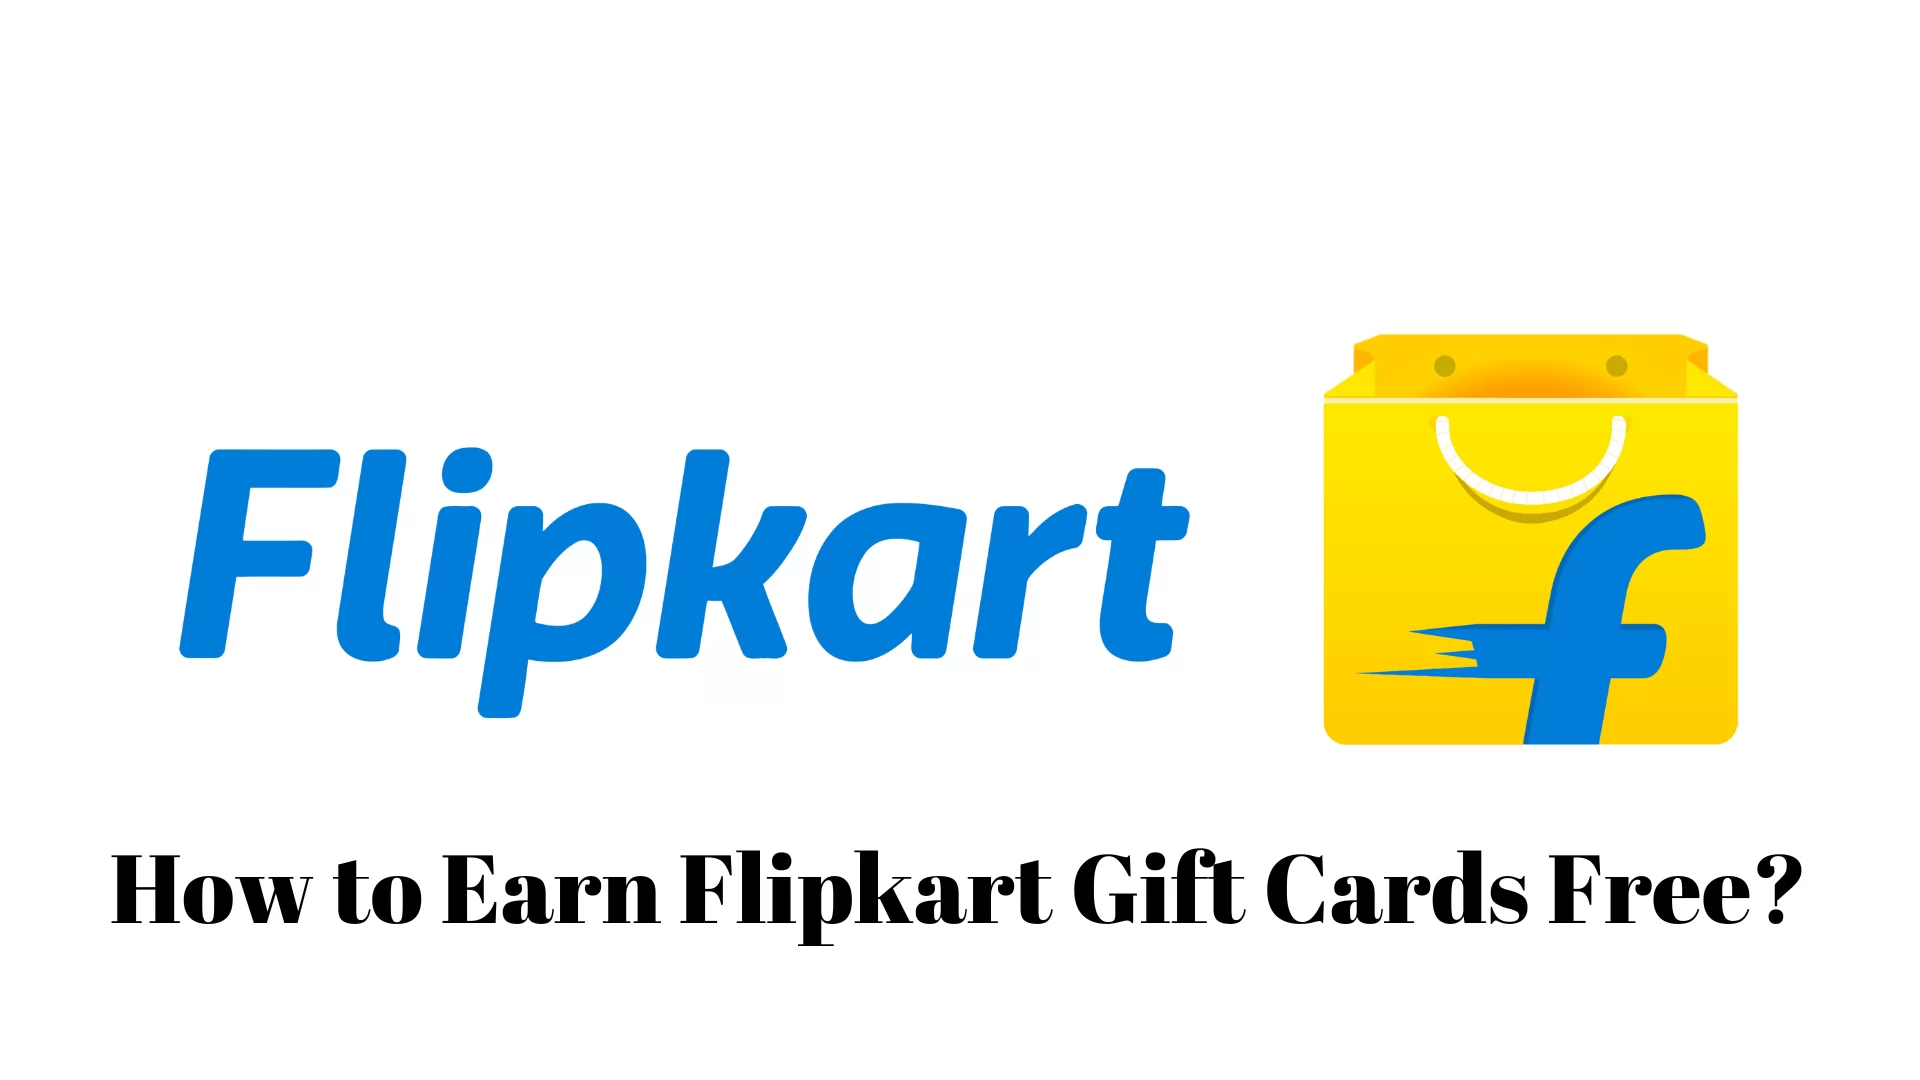 How to Earn Flipkart Gift Cards Free?